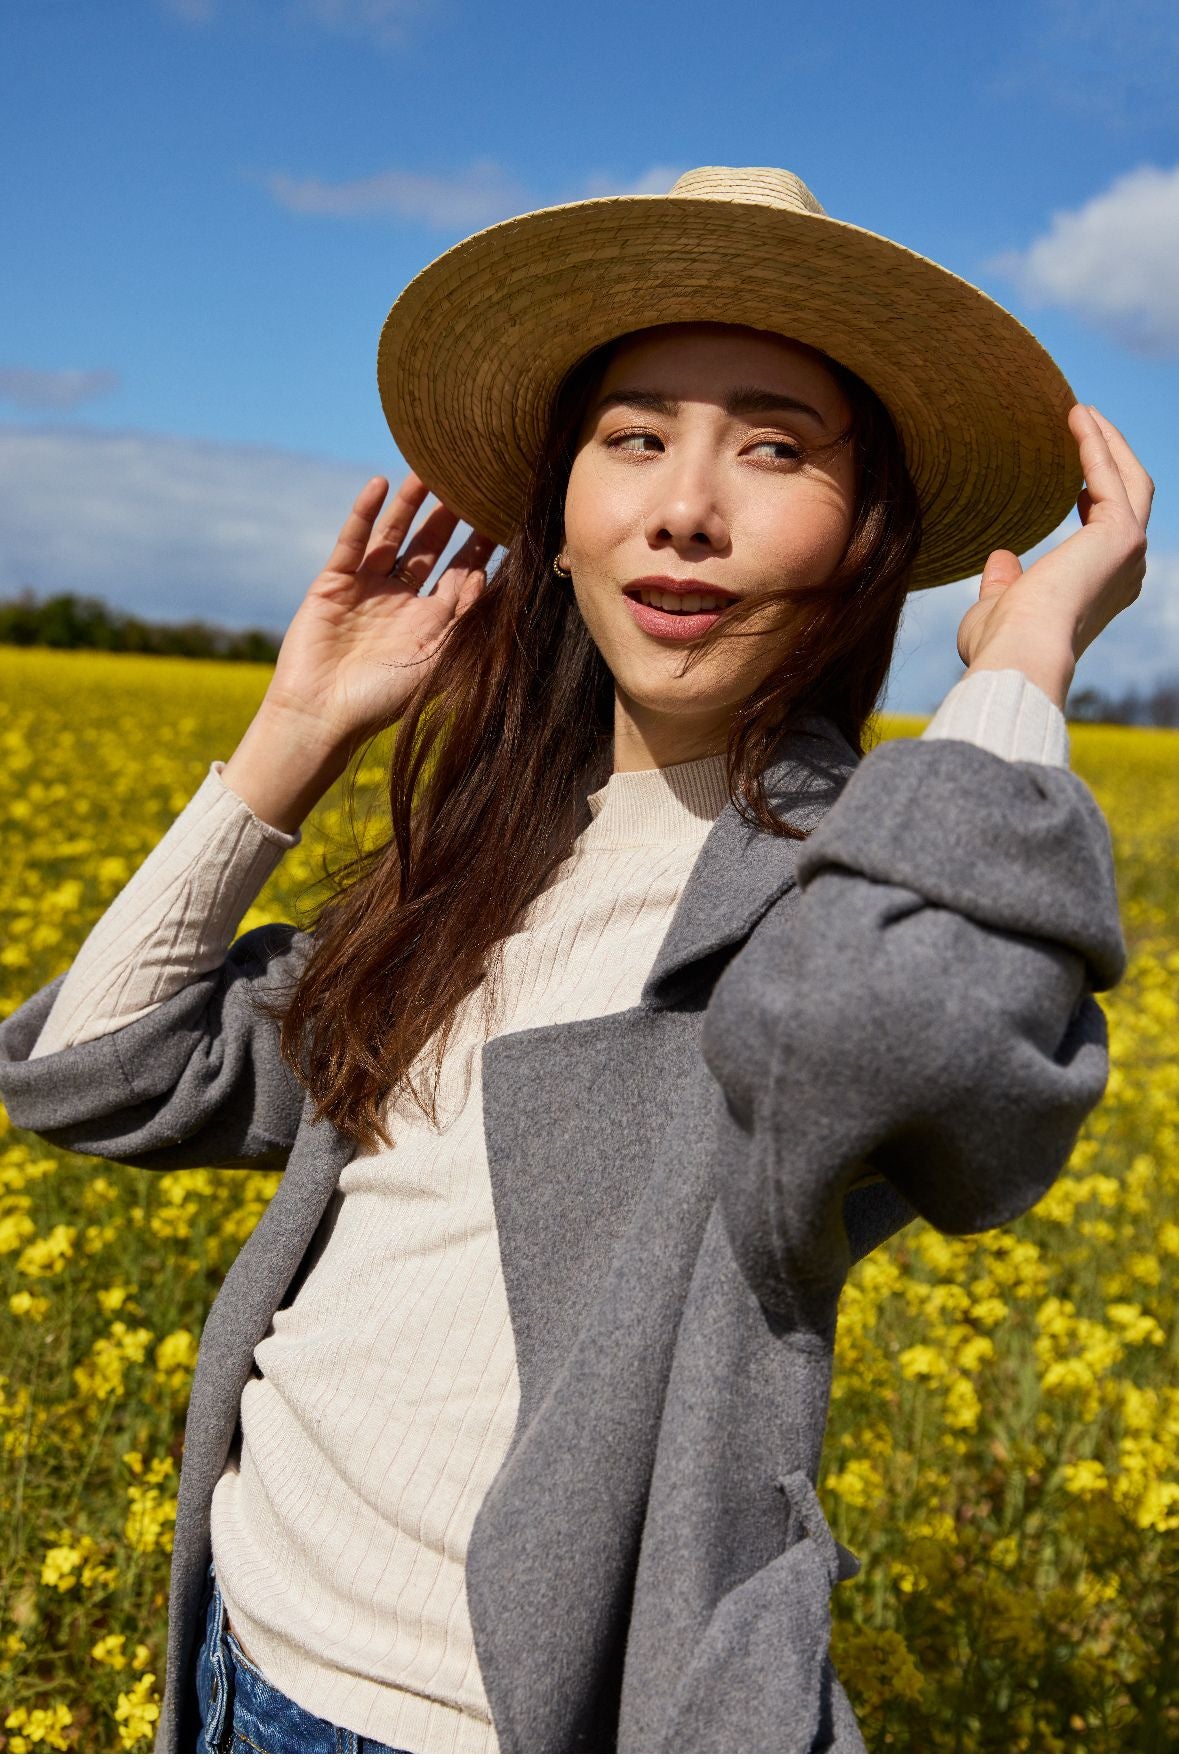 femme souriante en chapeau de paille et manteau se tenant dans un champ de fleurs jaunes.